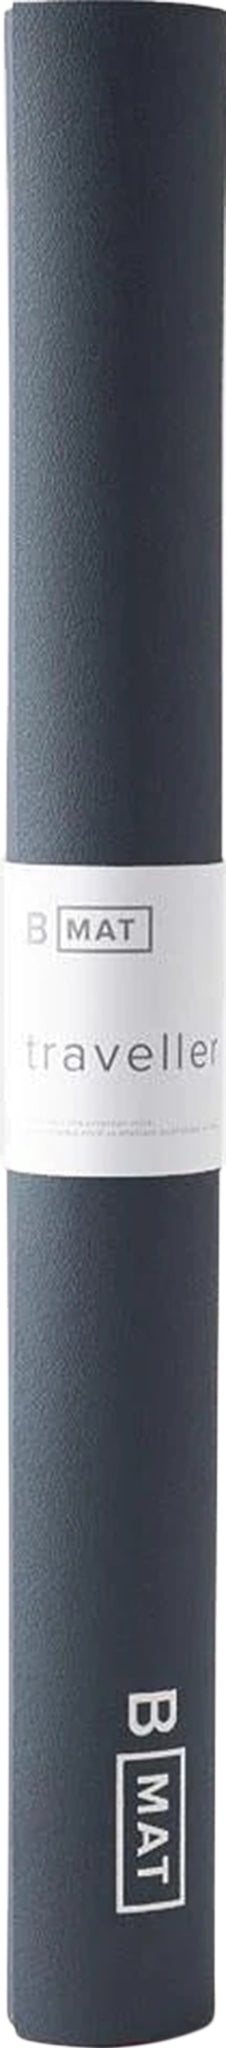 The b, mat traveller 2mm